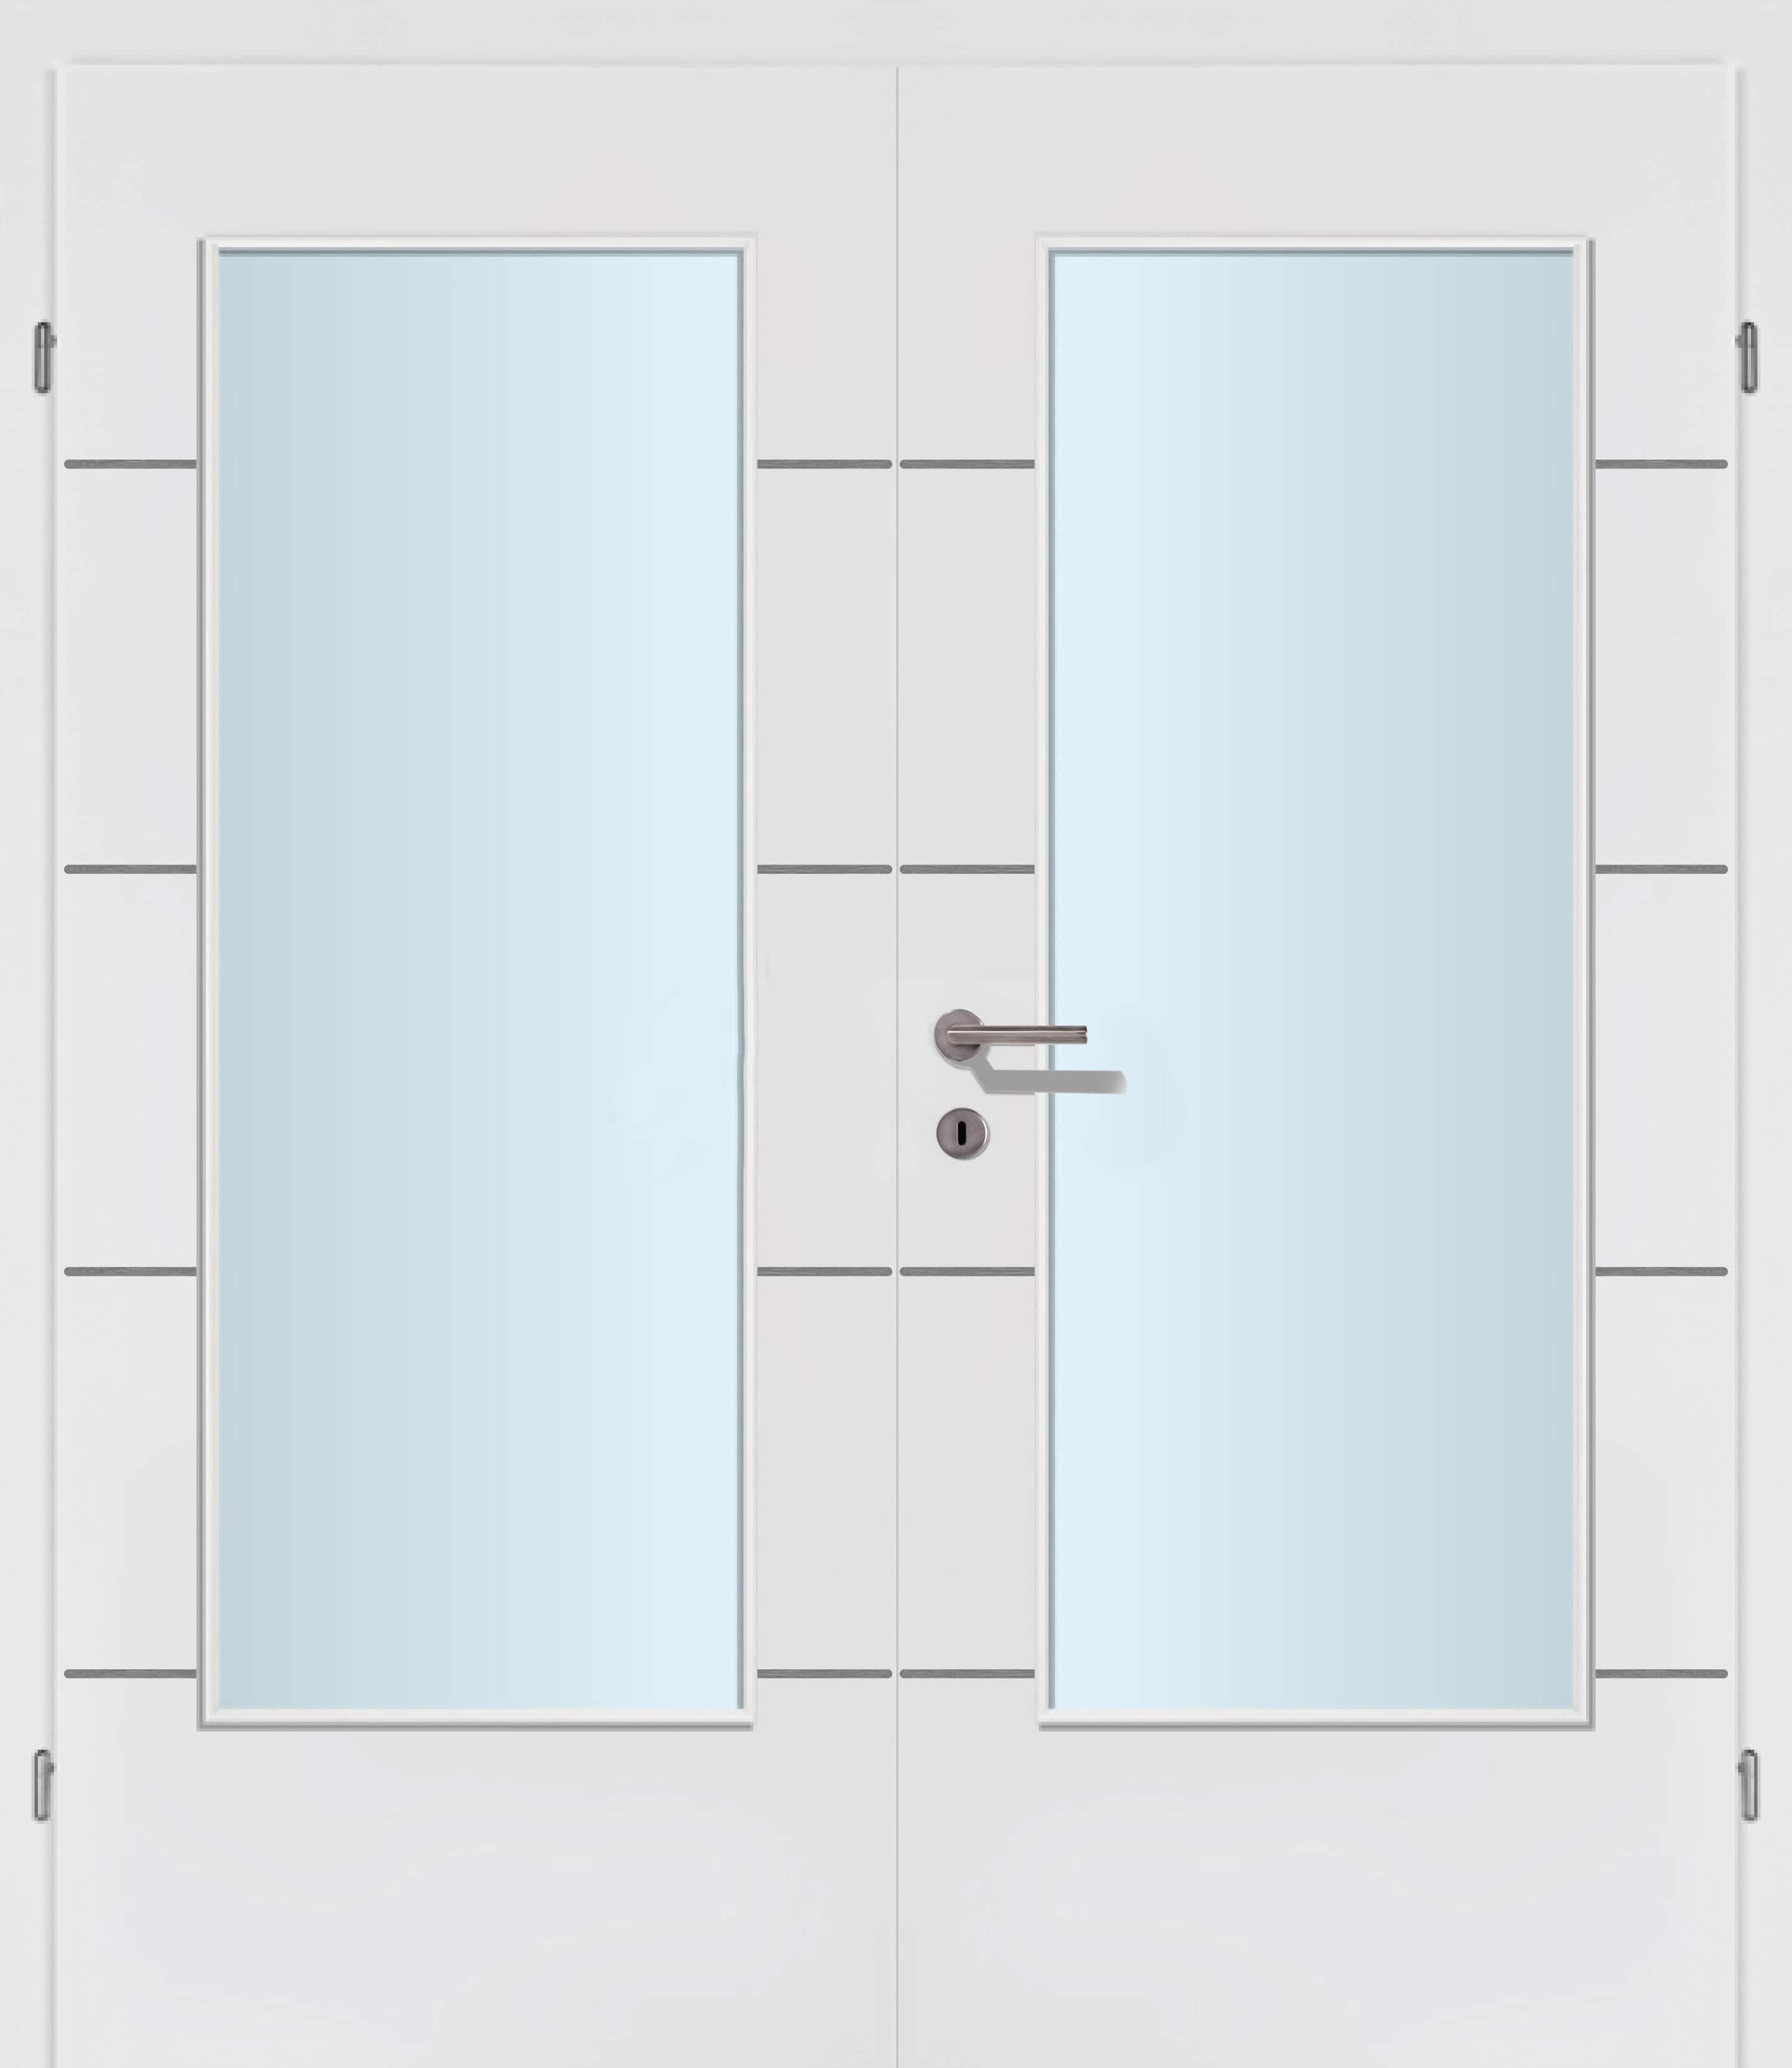 Selektion T39 Alu Effekt Lisenen weiss Innentür Inkl. Zarge (Türrahmen) Doppeltüre Inkl. Glaslichte C